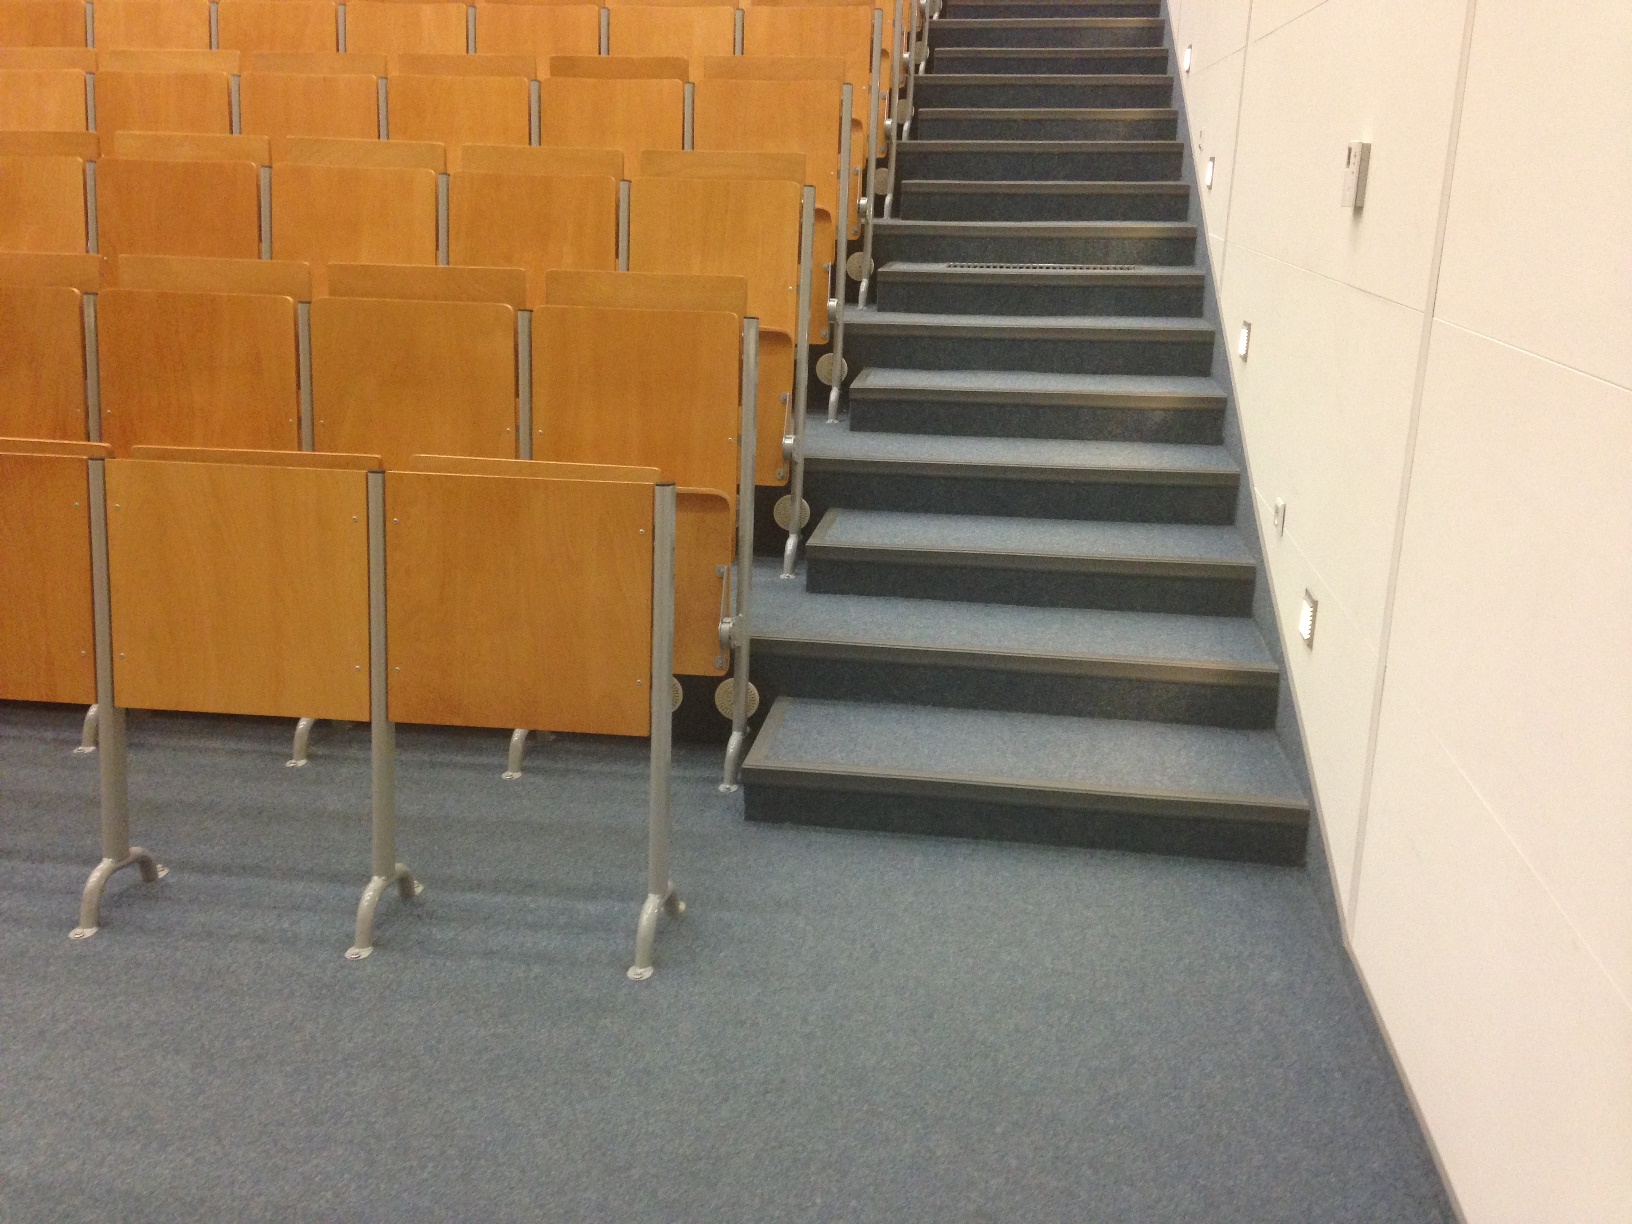 Mniejsza aula - brak wyznaczonych miejsc dla osób poruszających się na wózkach inwalidzkich